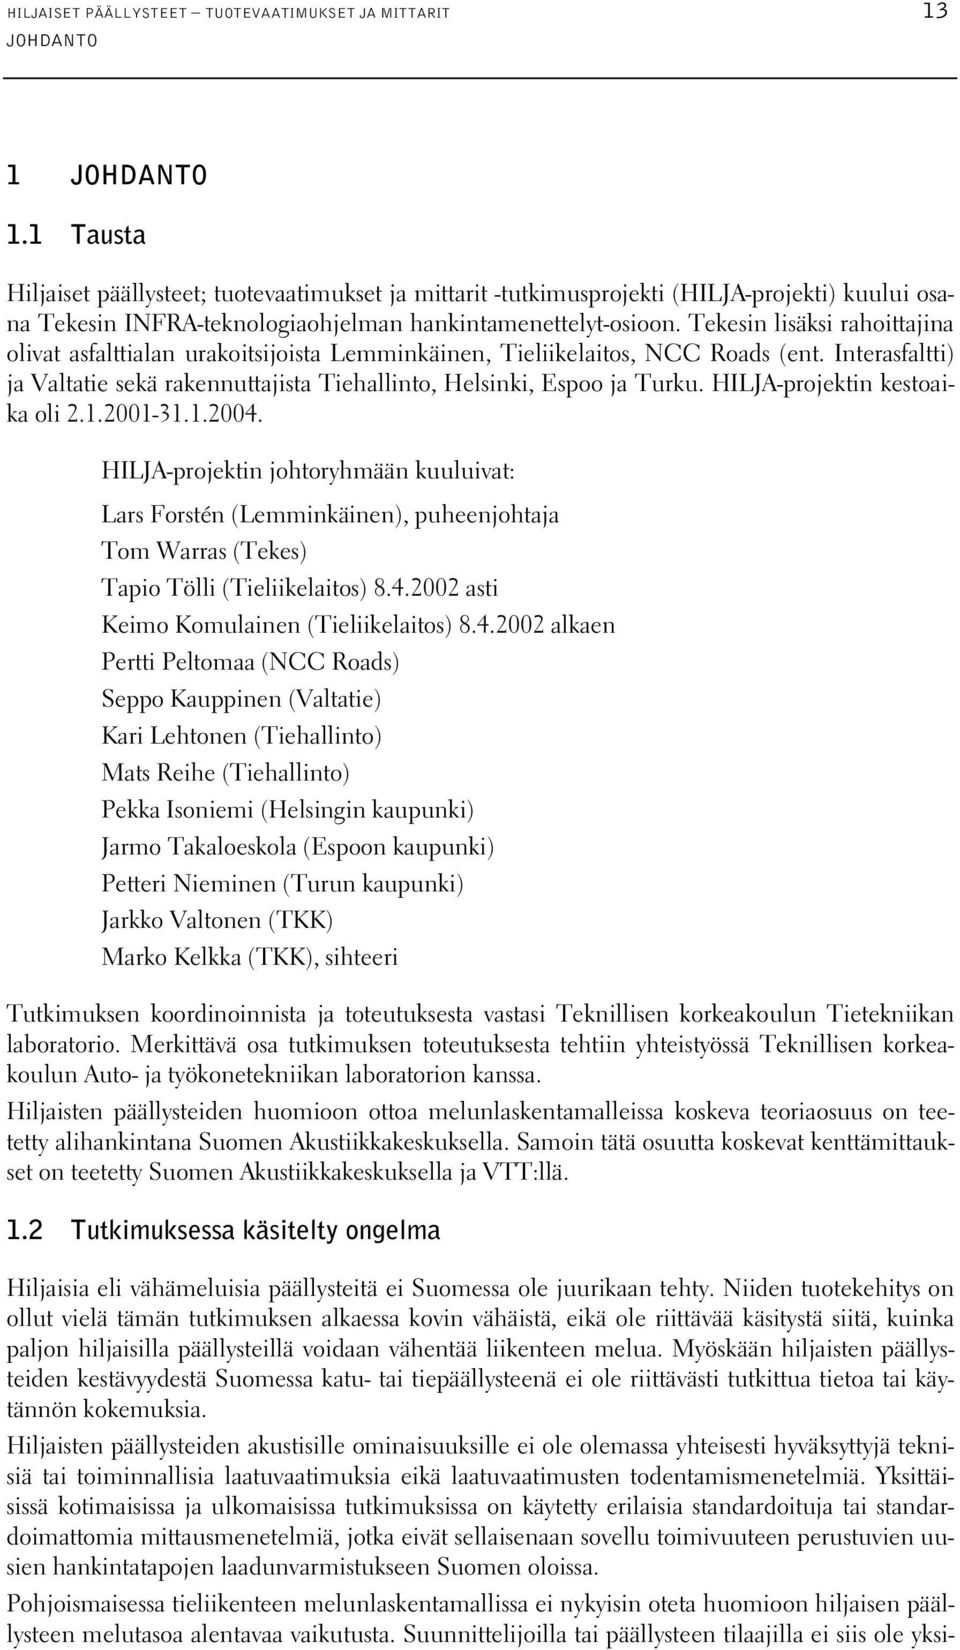 Tekesin lisäksi rahoittajina olivat asfalttialan urakoitsijoista Lemminkäinen, Tieliikelaitos, NCC Roads (ent. Interasfaltti) ja Valtatie sekä rakennuttajista Tiehallinto, Helsinki, Espoo ja Turku.